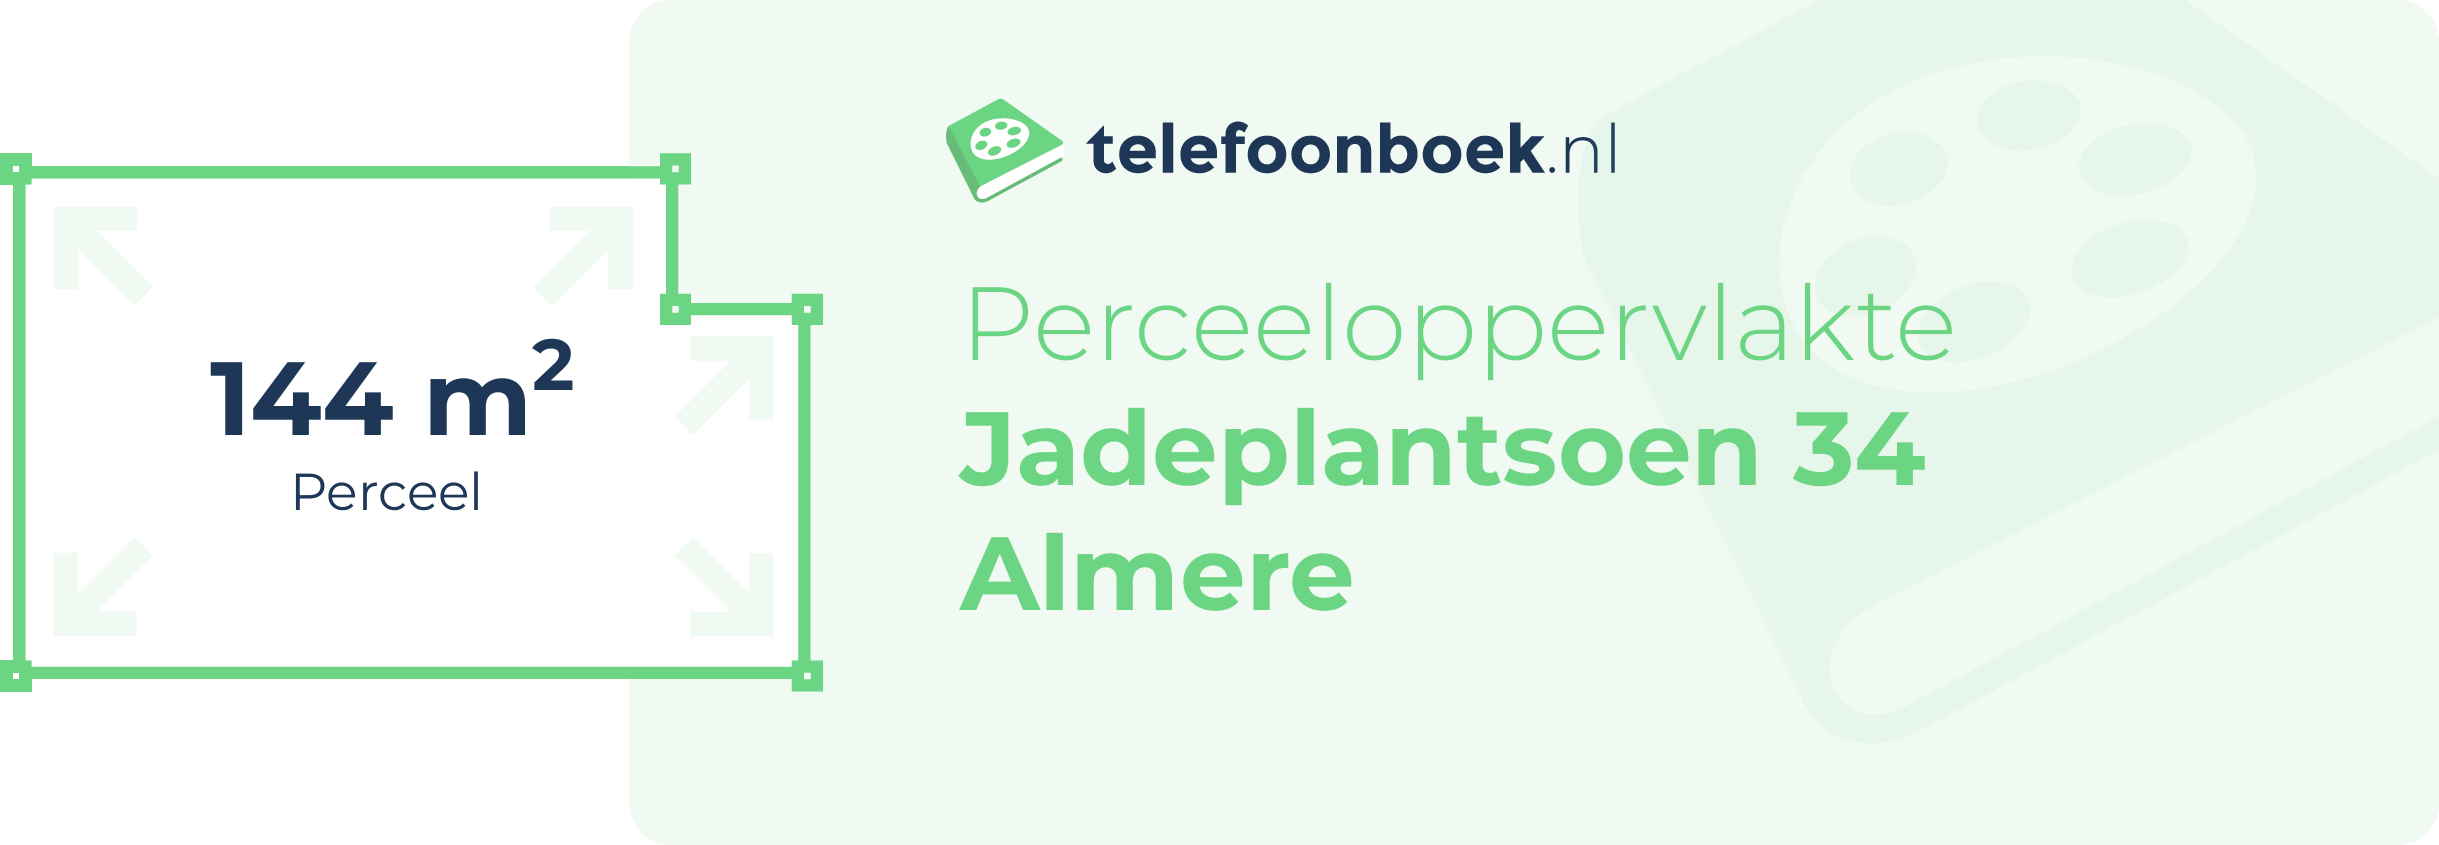 Perceeloppervlakte Jadeplantsoen 34 Almere